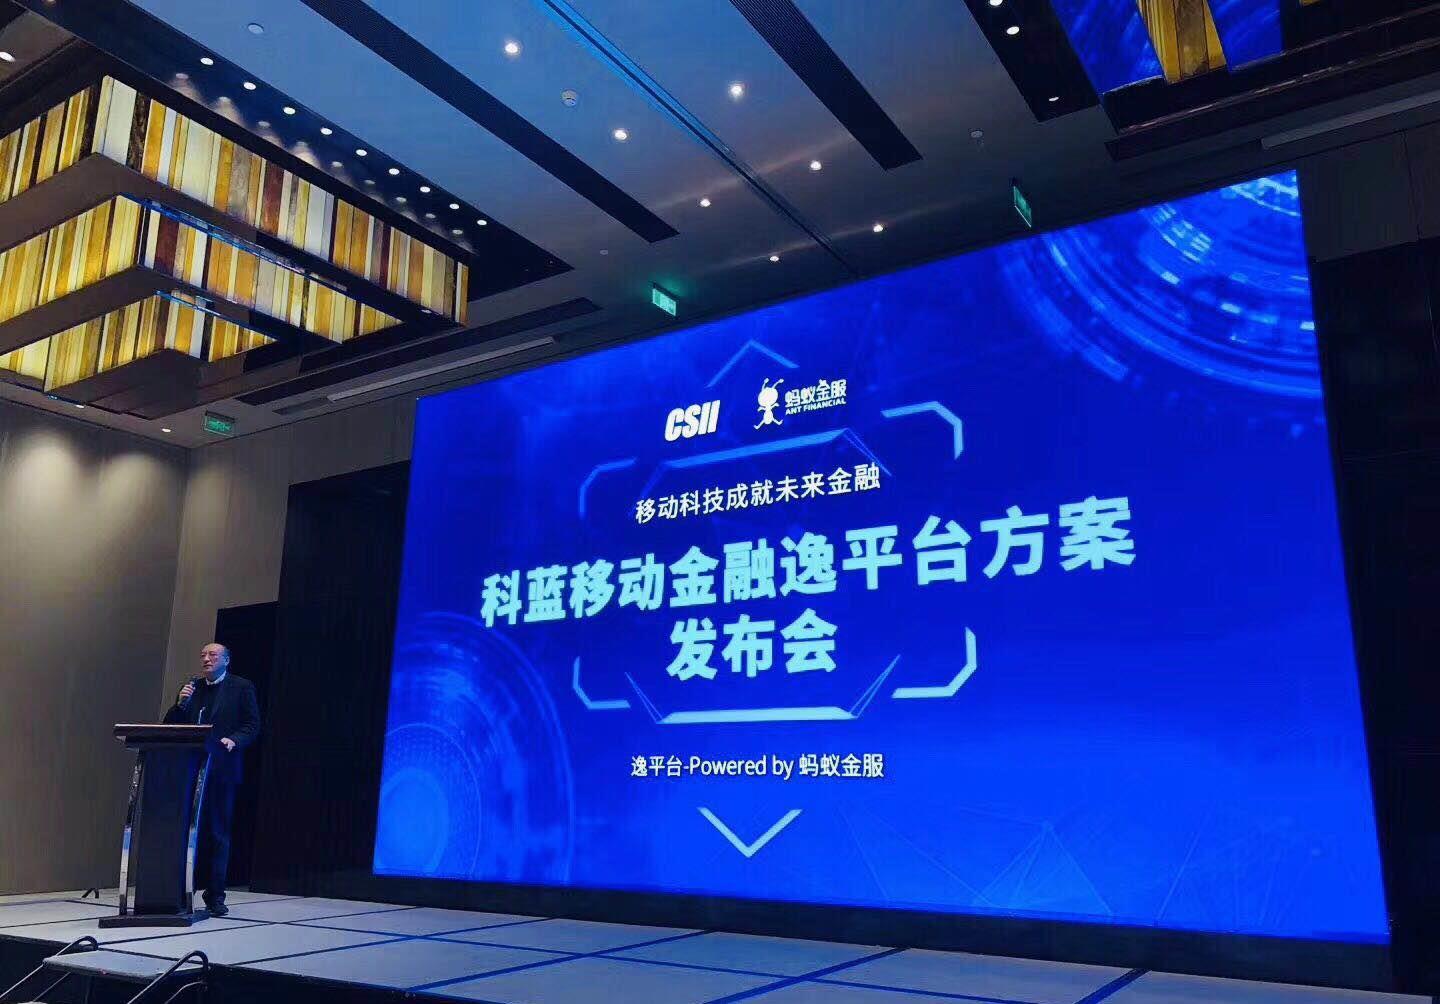 科蓝软件 和 蚂蚁金服 的战略合作发布会早于1月19日在北京隆重发布!